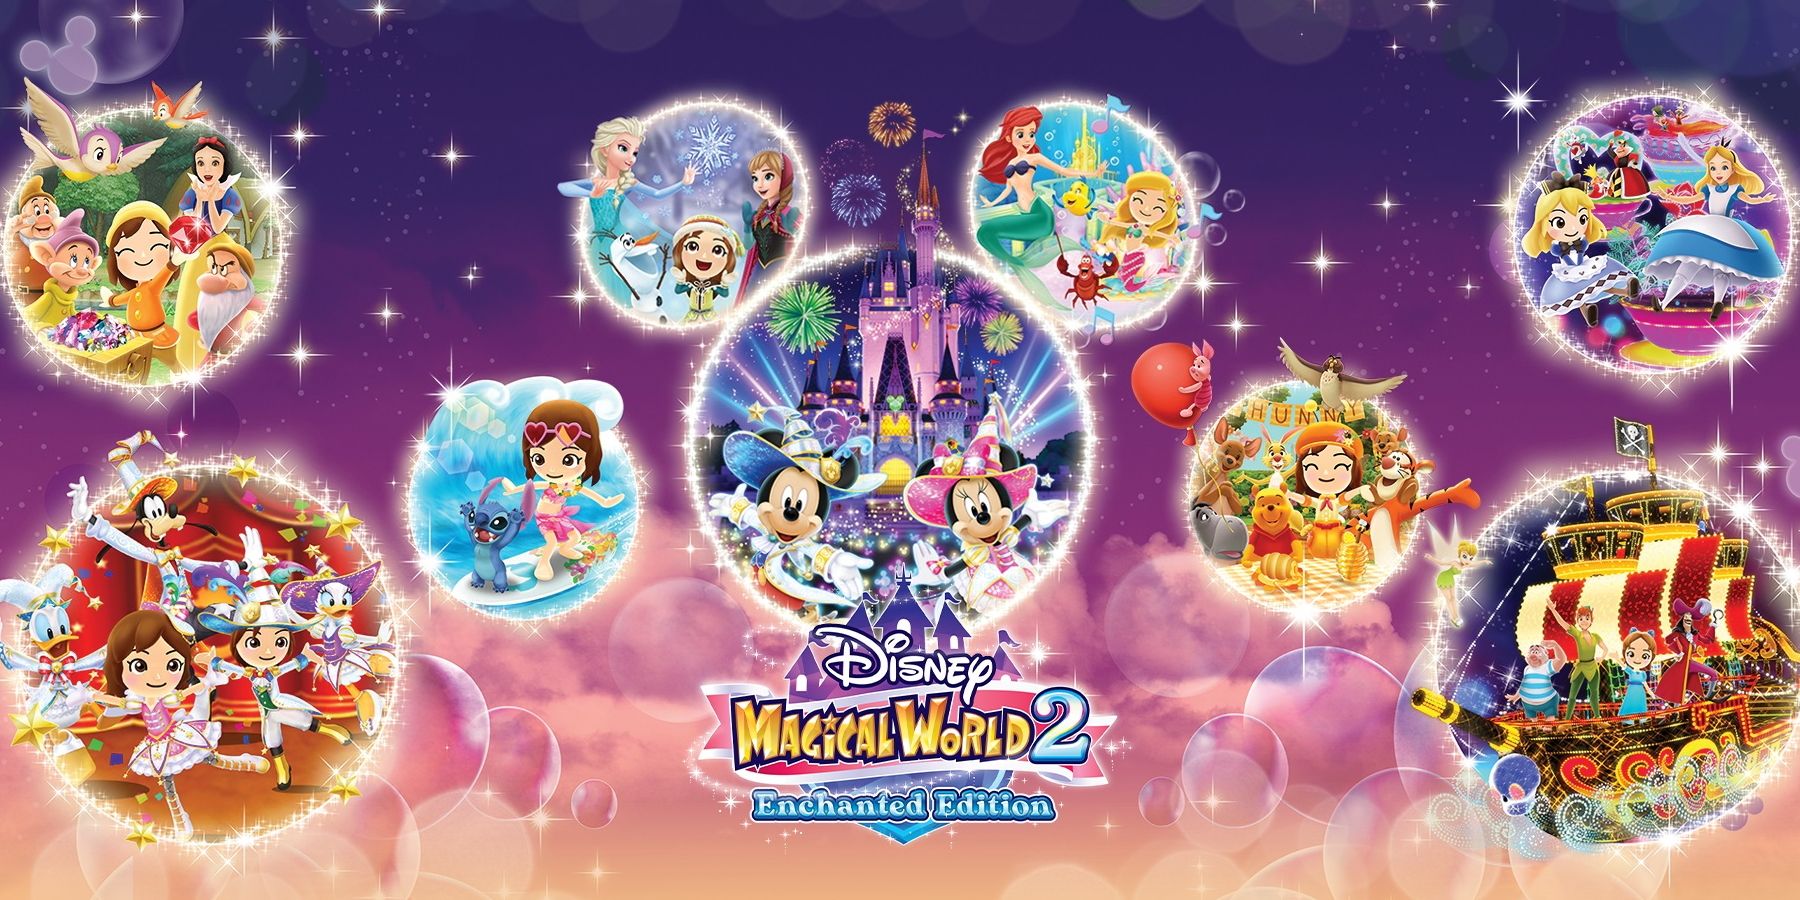 Disney Magical World 2: Enchanted Edition, die dieses Jahr zum Wechseln kommt